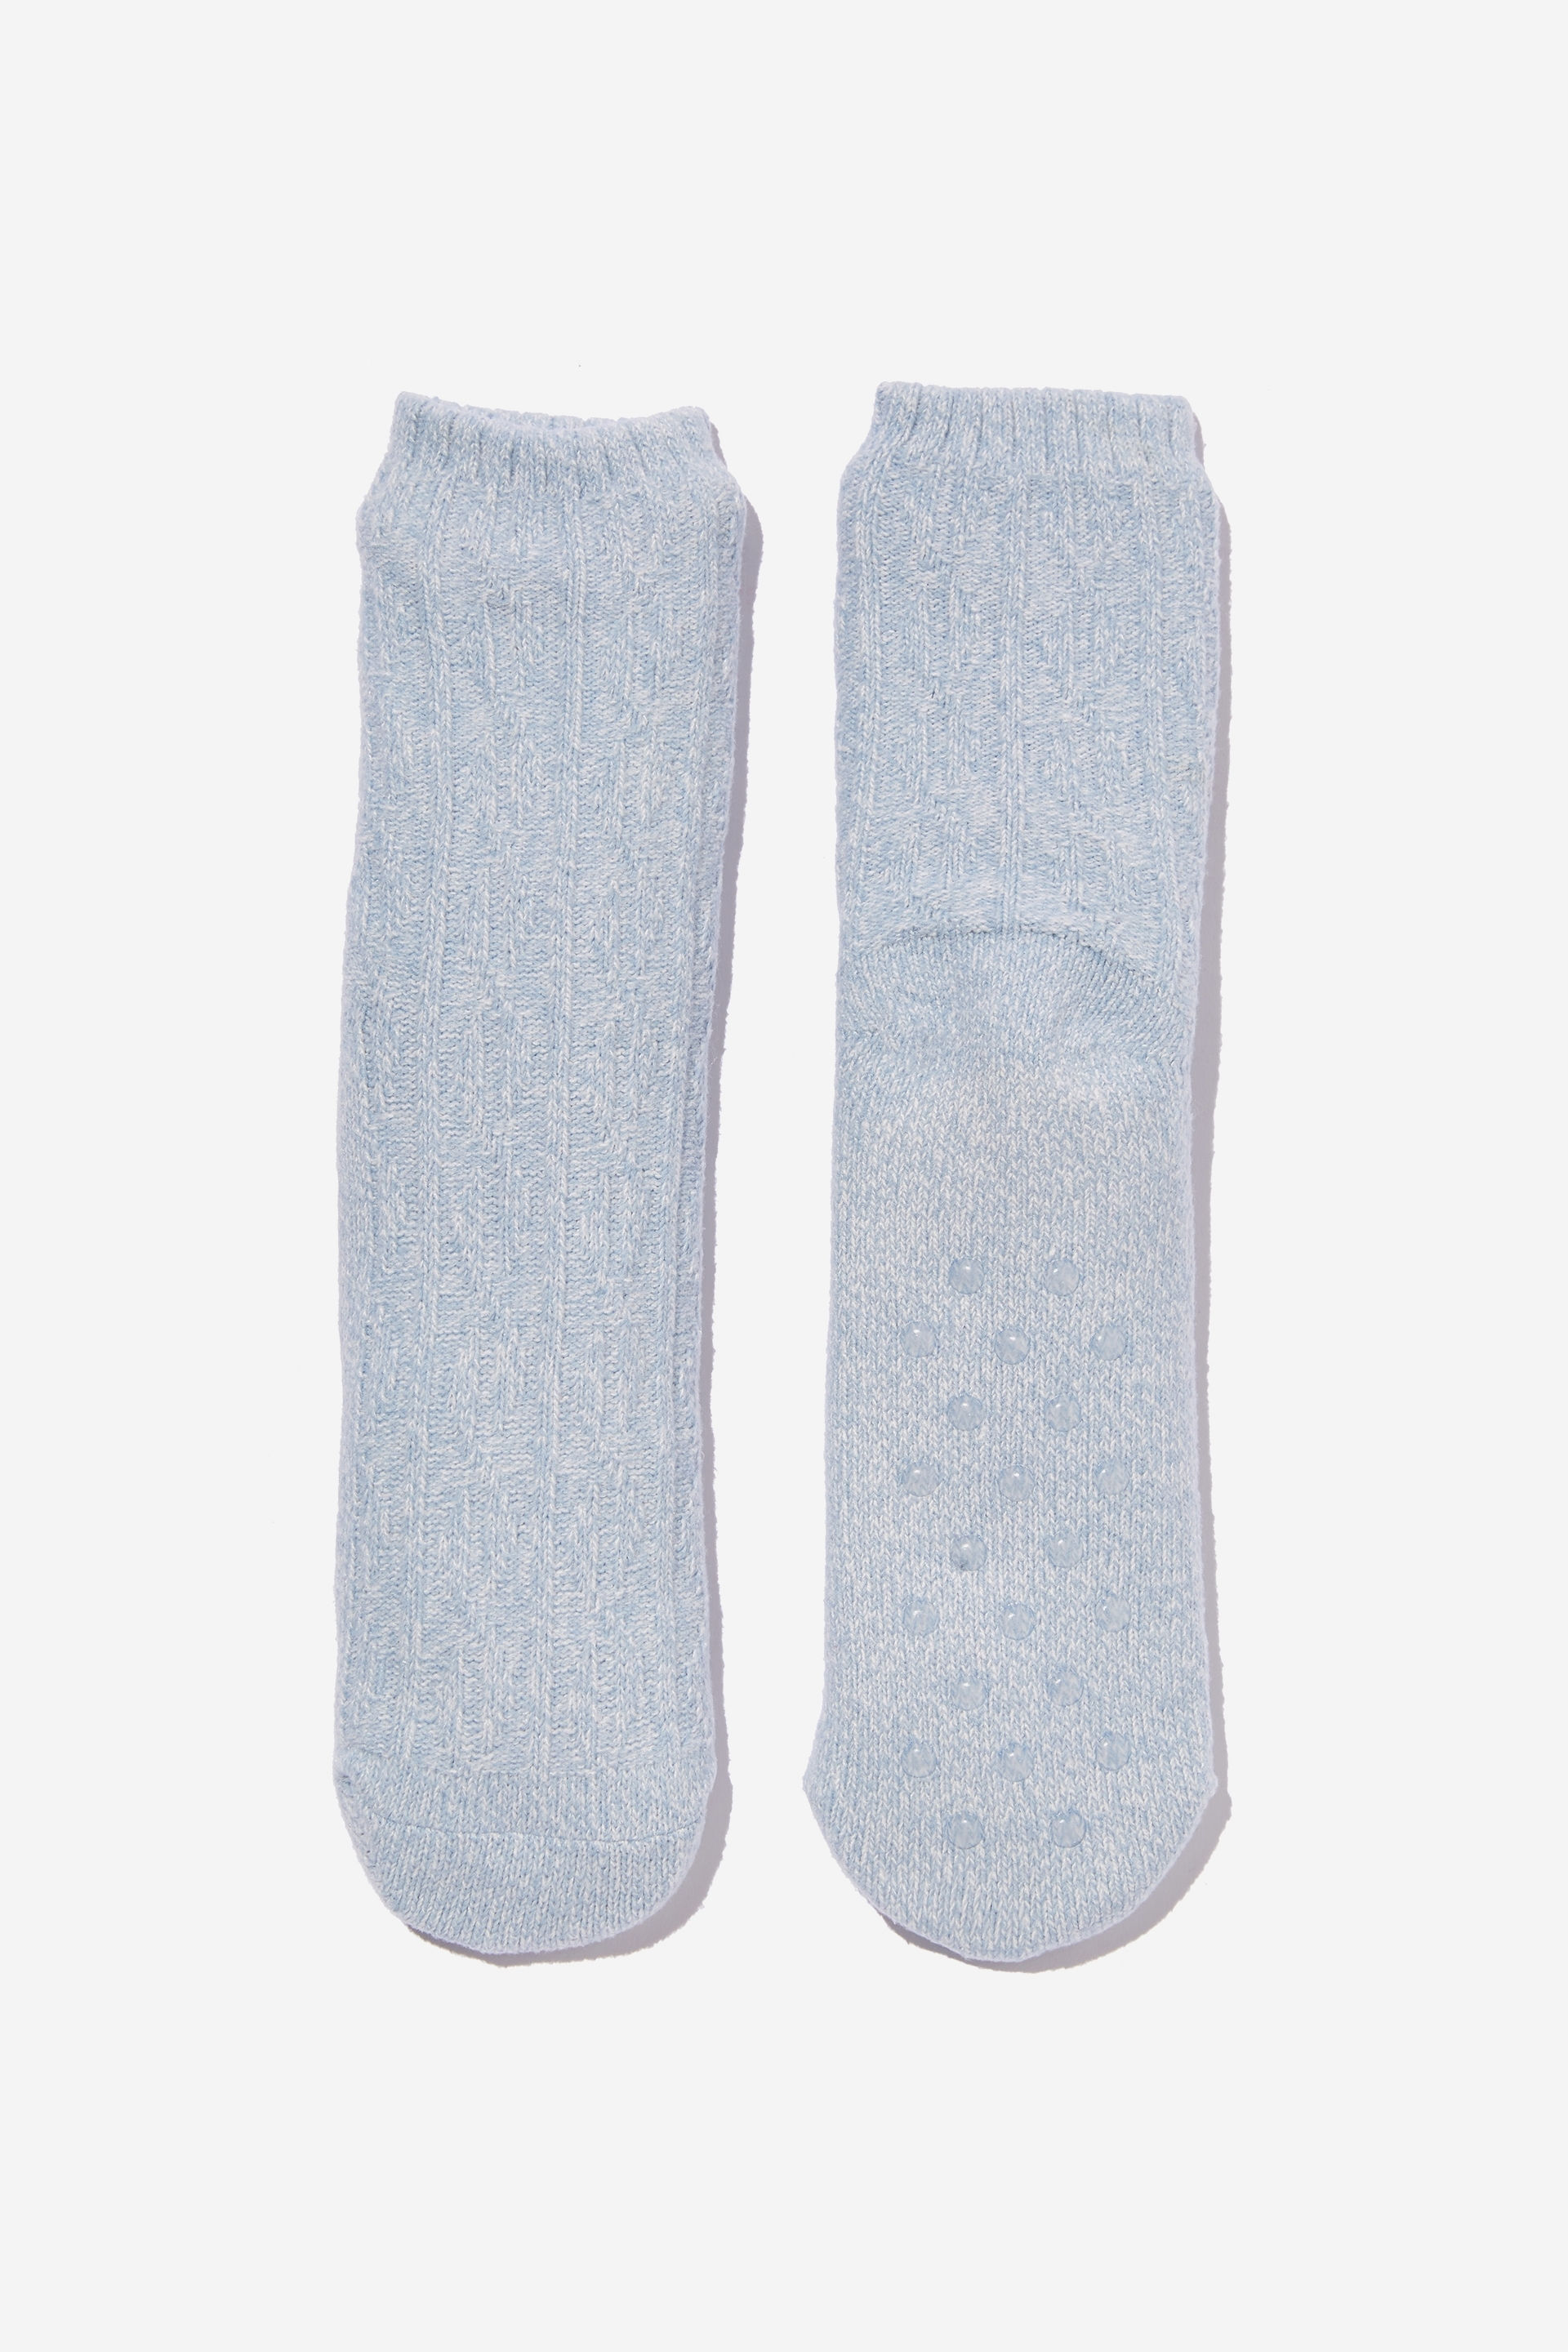 Rubi - Loungin Sock - Calm blue